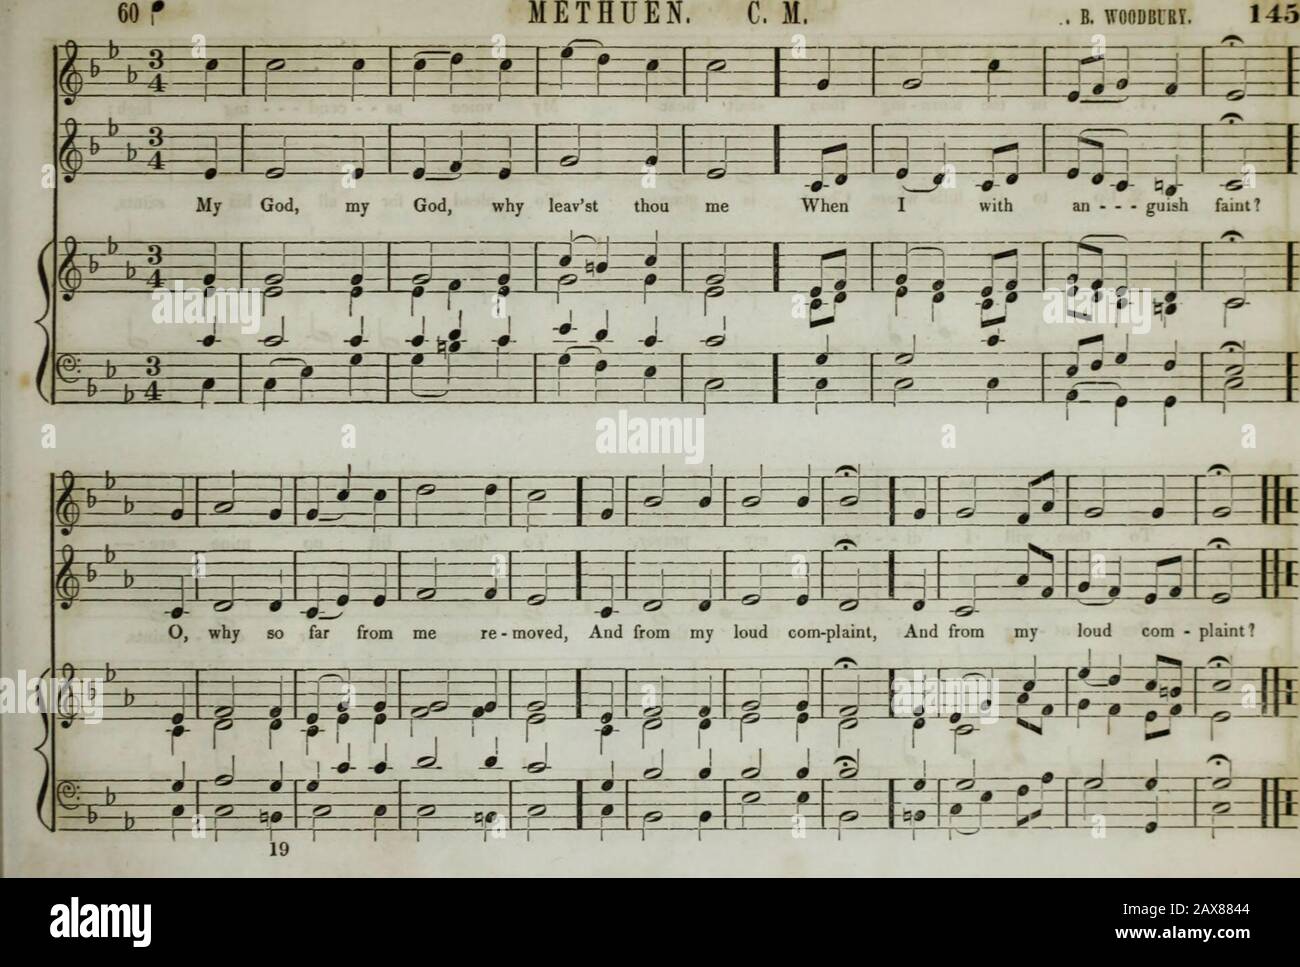 La collection de musique d'église de la Boston Musical Education Society : composée de musiques originales de psaume et d'hymnes, de pièces, de chants et de c.; y compris des compositions adaptées au service de l'Église épiscopale protestante . 111 néant r W ftj?-.^ - rn^ -—u —- ATKIMIOlSK. 6. I. ME =E=b 35 EJ z=L.^-.L-(l [—L 4—1 V- HALF. TF=f |/;l ;l Ho - ? /4..b-« ±=c jriinl my WOT da, 0 1 J gra - - Seigneur cioua; ai -? - ? I i t=J 1 - - copt my hr4—j= :=t=i praj M rer; tr=4 i- ^ ;- l^fi fr RT rlr 1 r -p r À «) +  1- ? * 1 M ii - - - Lone = £ • mon 1 J., I.J.I j , 1 J Kinij, mv God, WU I pour l'aide RE ? - paire III i k Banque D'Images